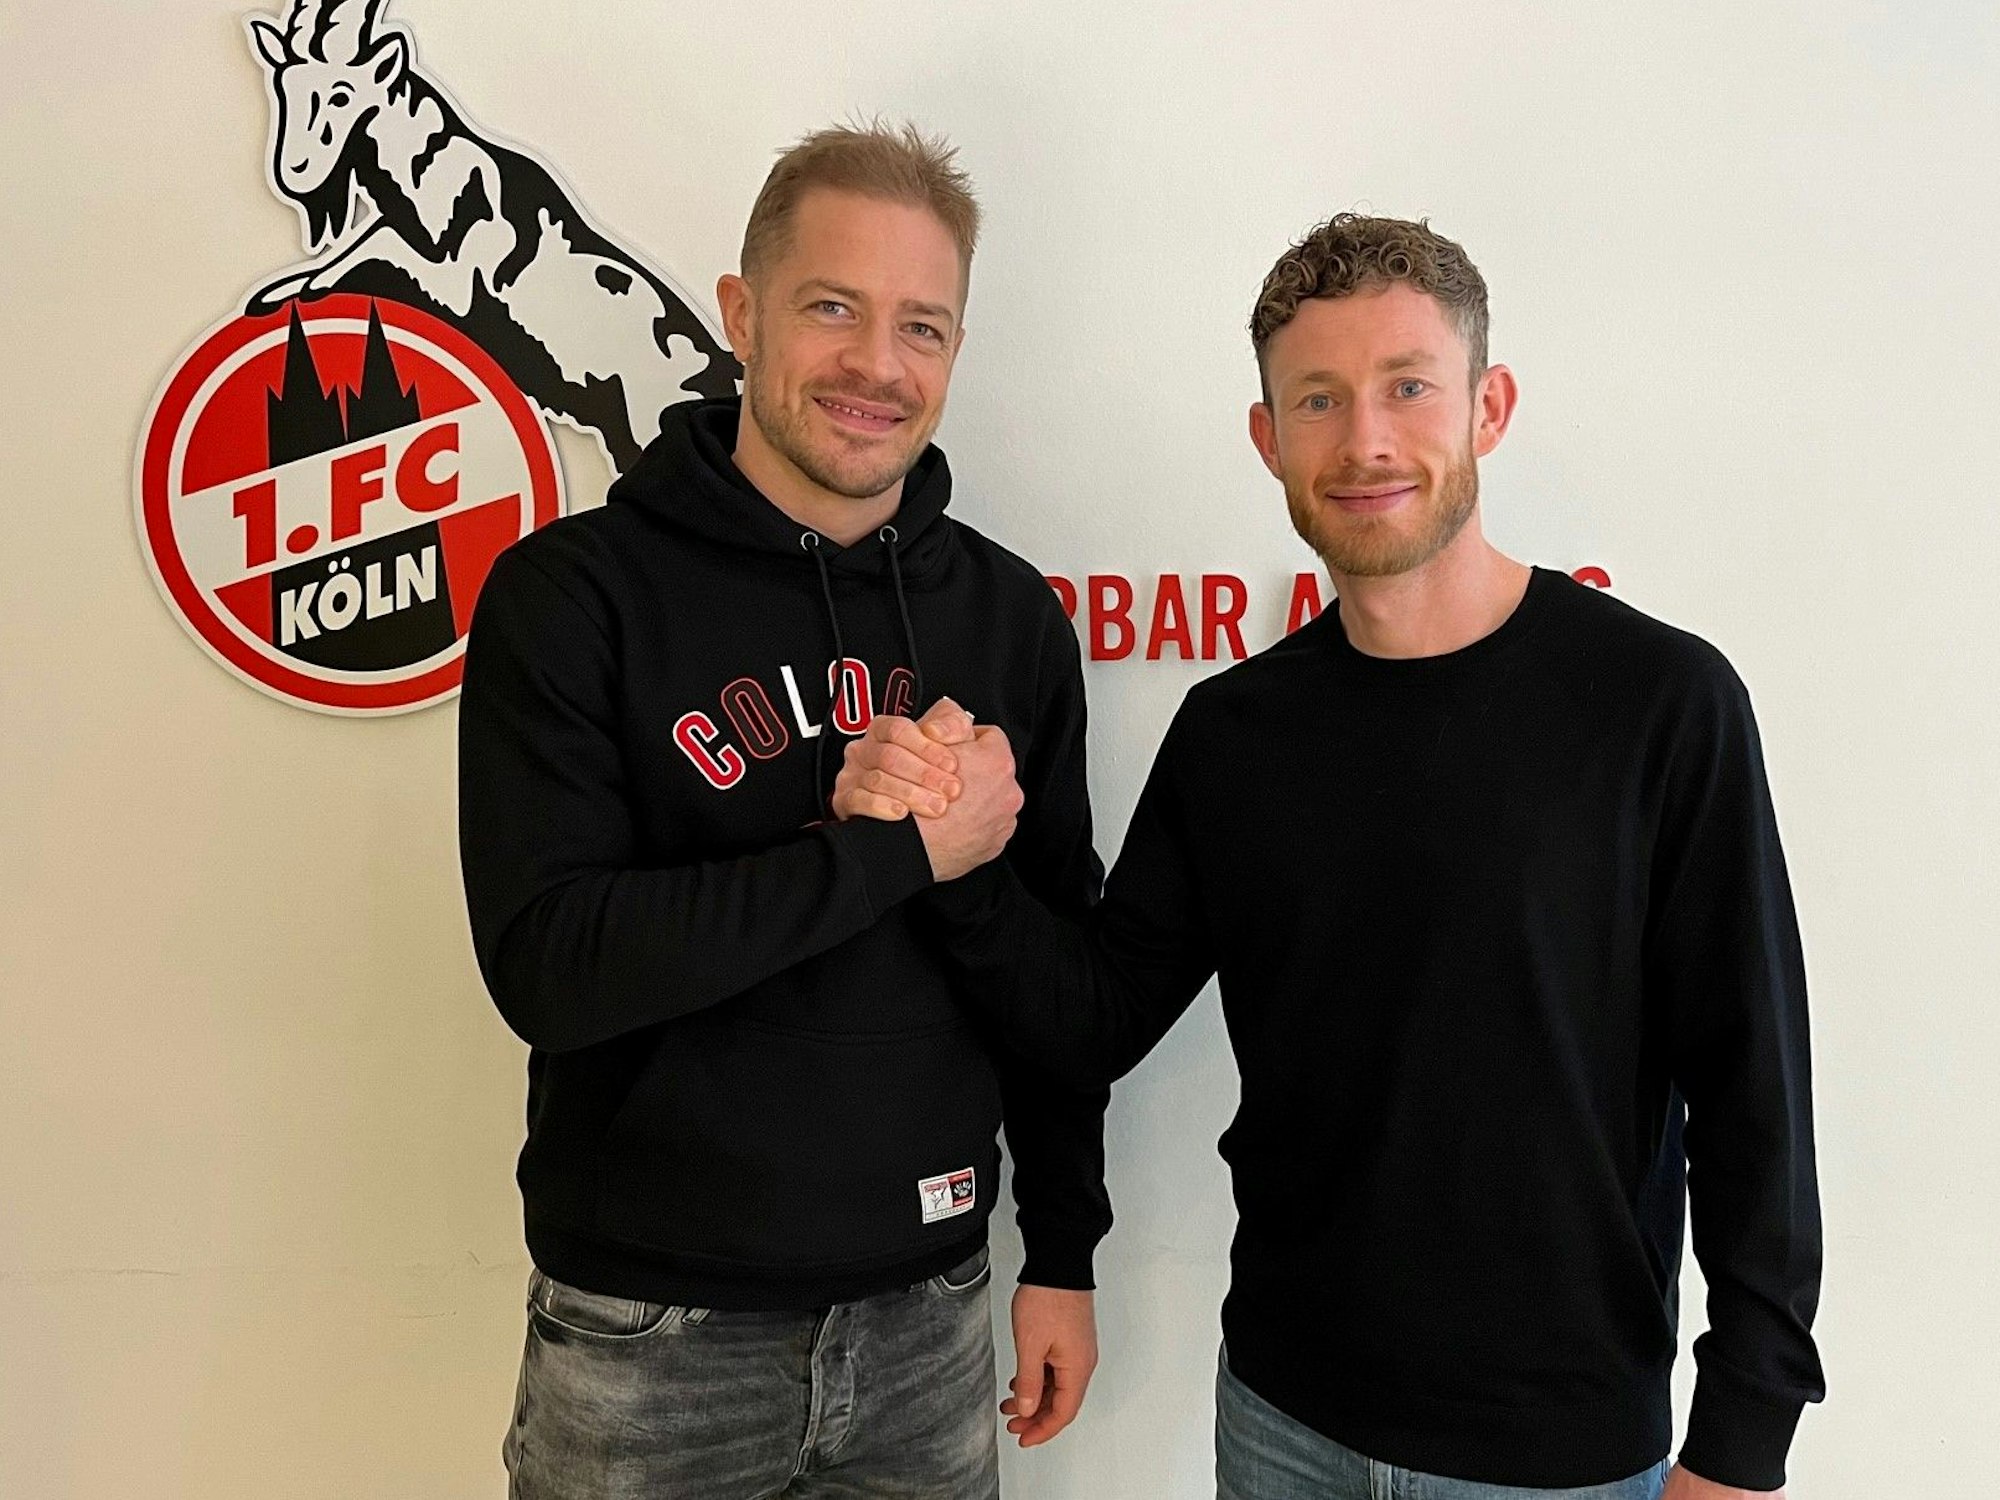 Die Kapitäne im Doppel-Interview: Fußballer Florian Kainz vom 1. FC Köln traf Eishockey-Profi Moritz Müller von den Kölner Haien.